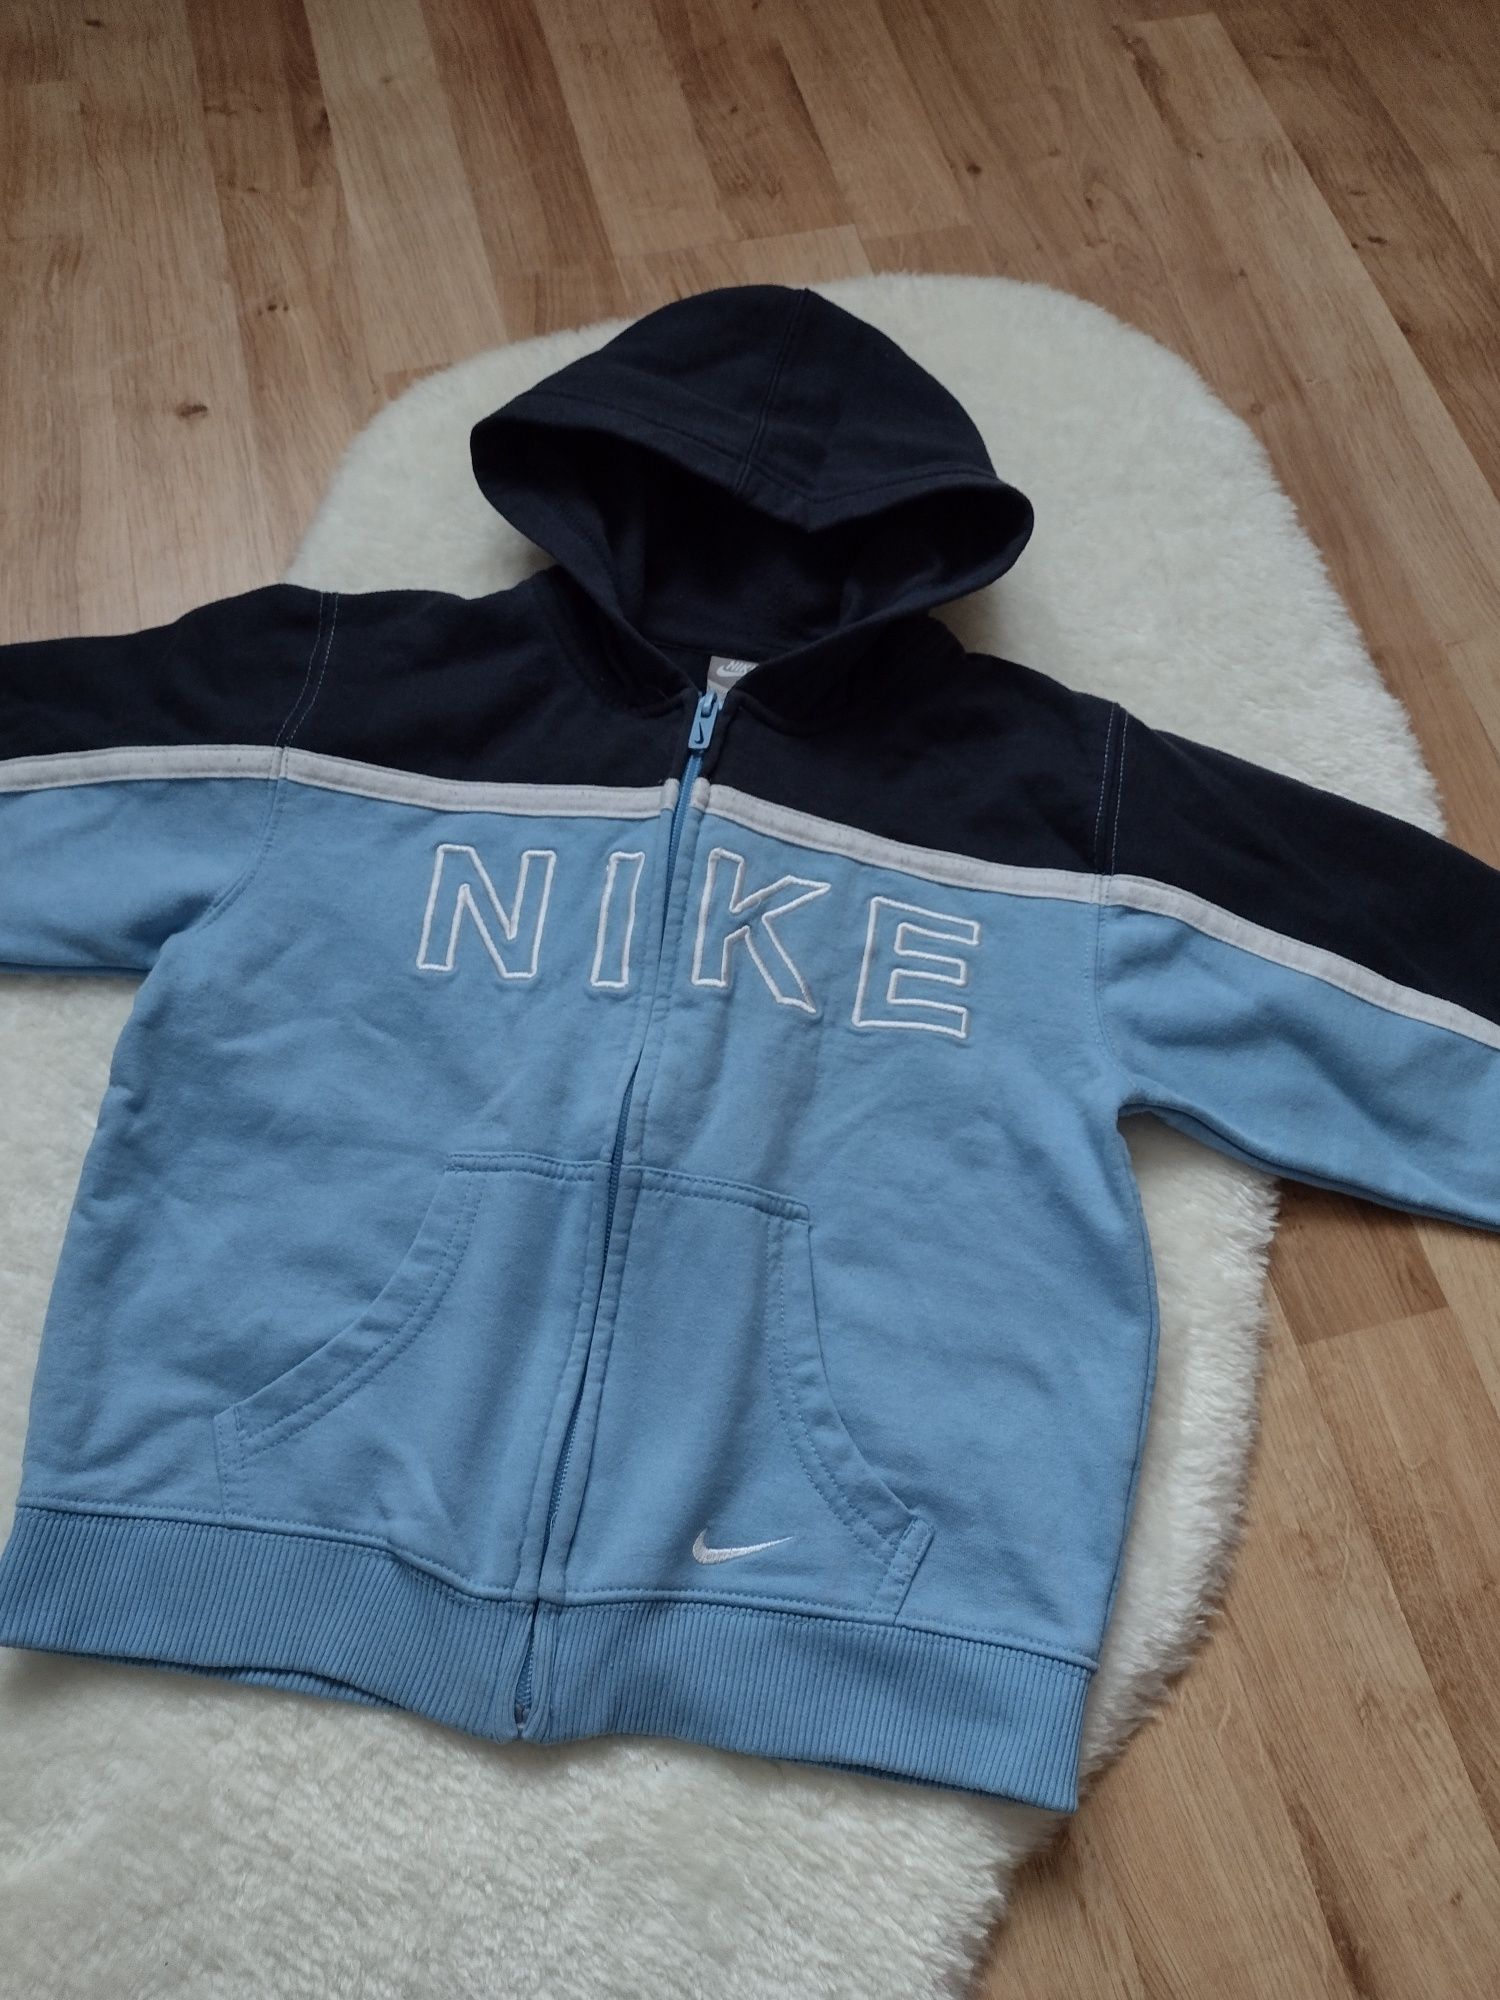 Bluza Nike rozpinana 128-134cm